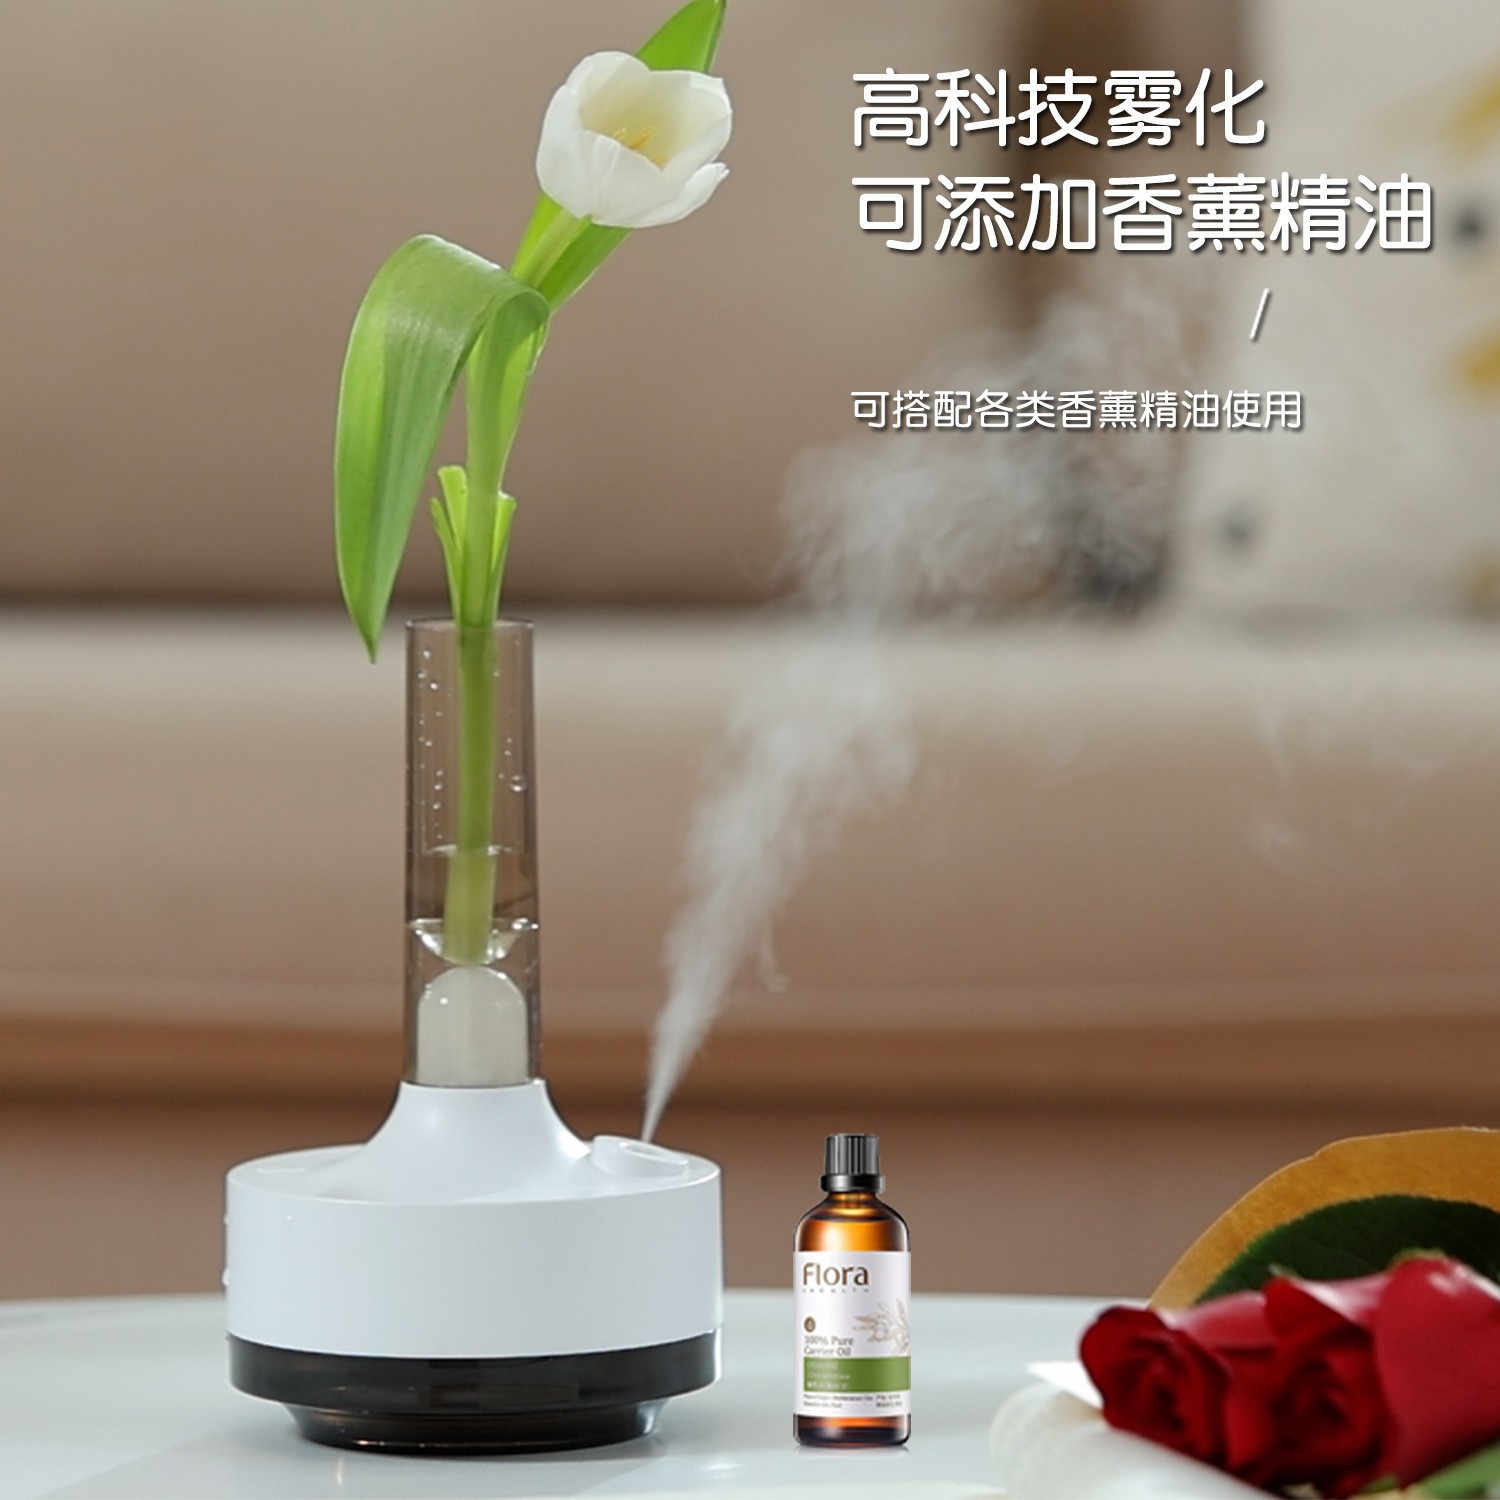 新款喷雾精油芳香香薰机七彩LED氛围灯卧室家庭小型花瓶USB加湿器